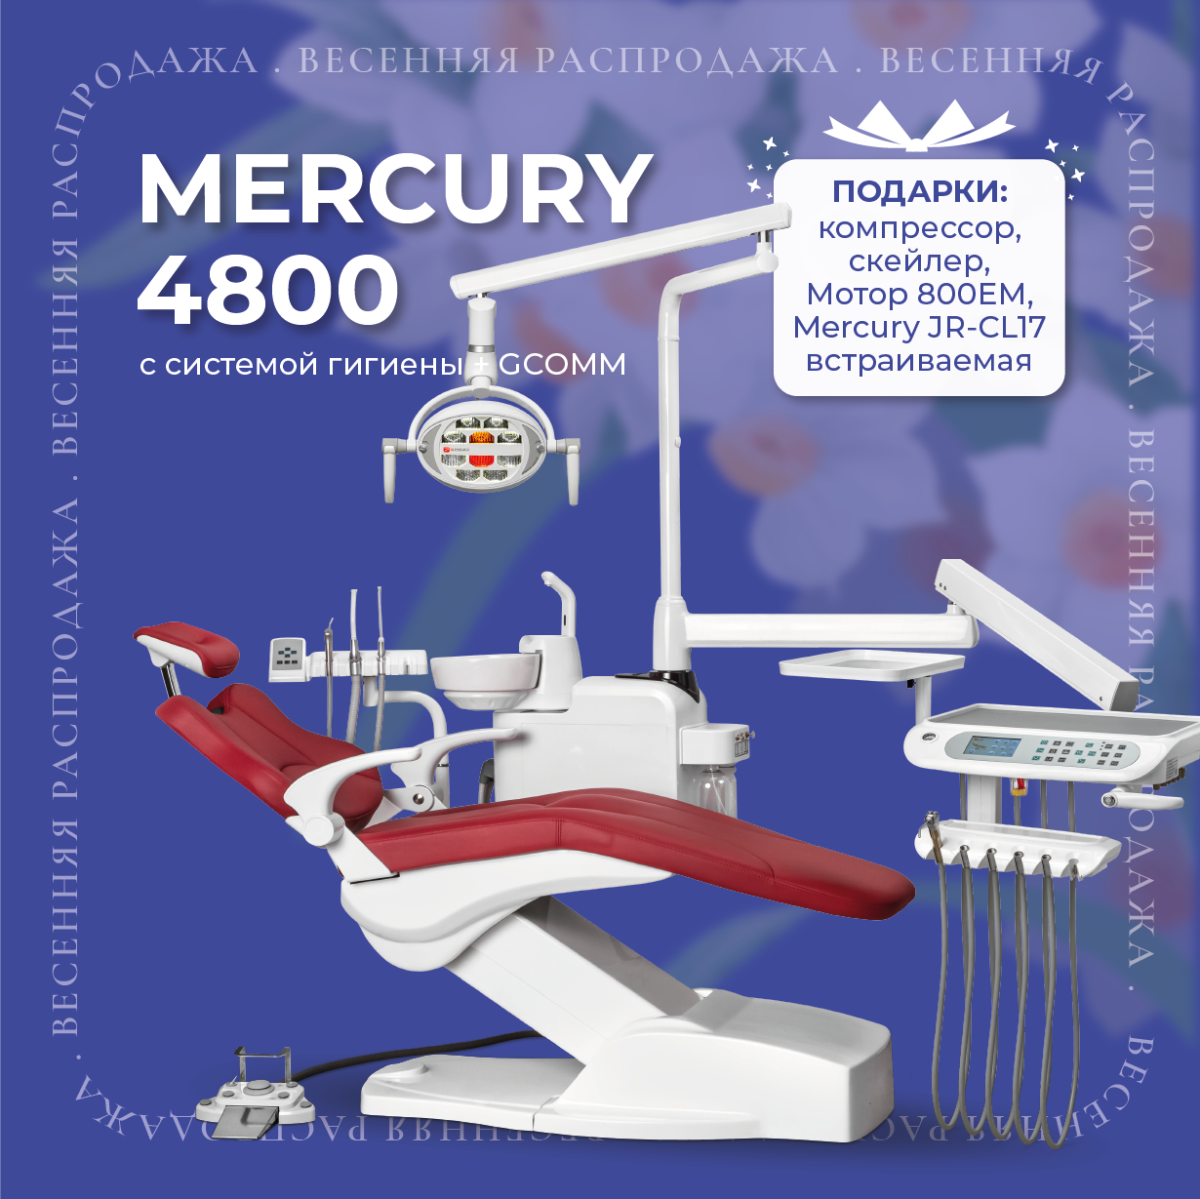 Весенняя акция Mercury 4800 с системой гигиены + GCOMM